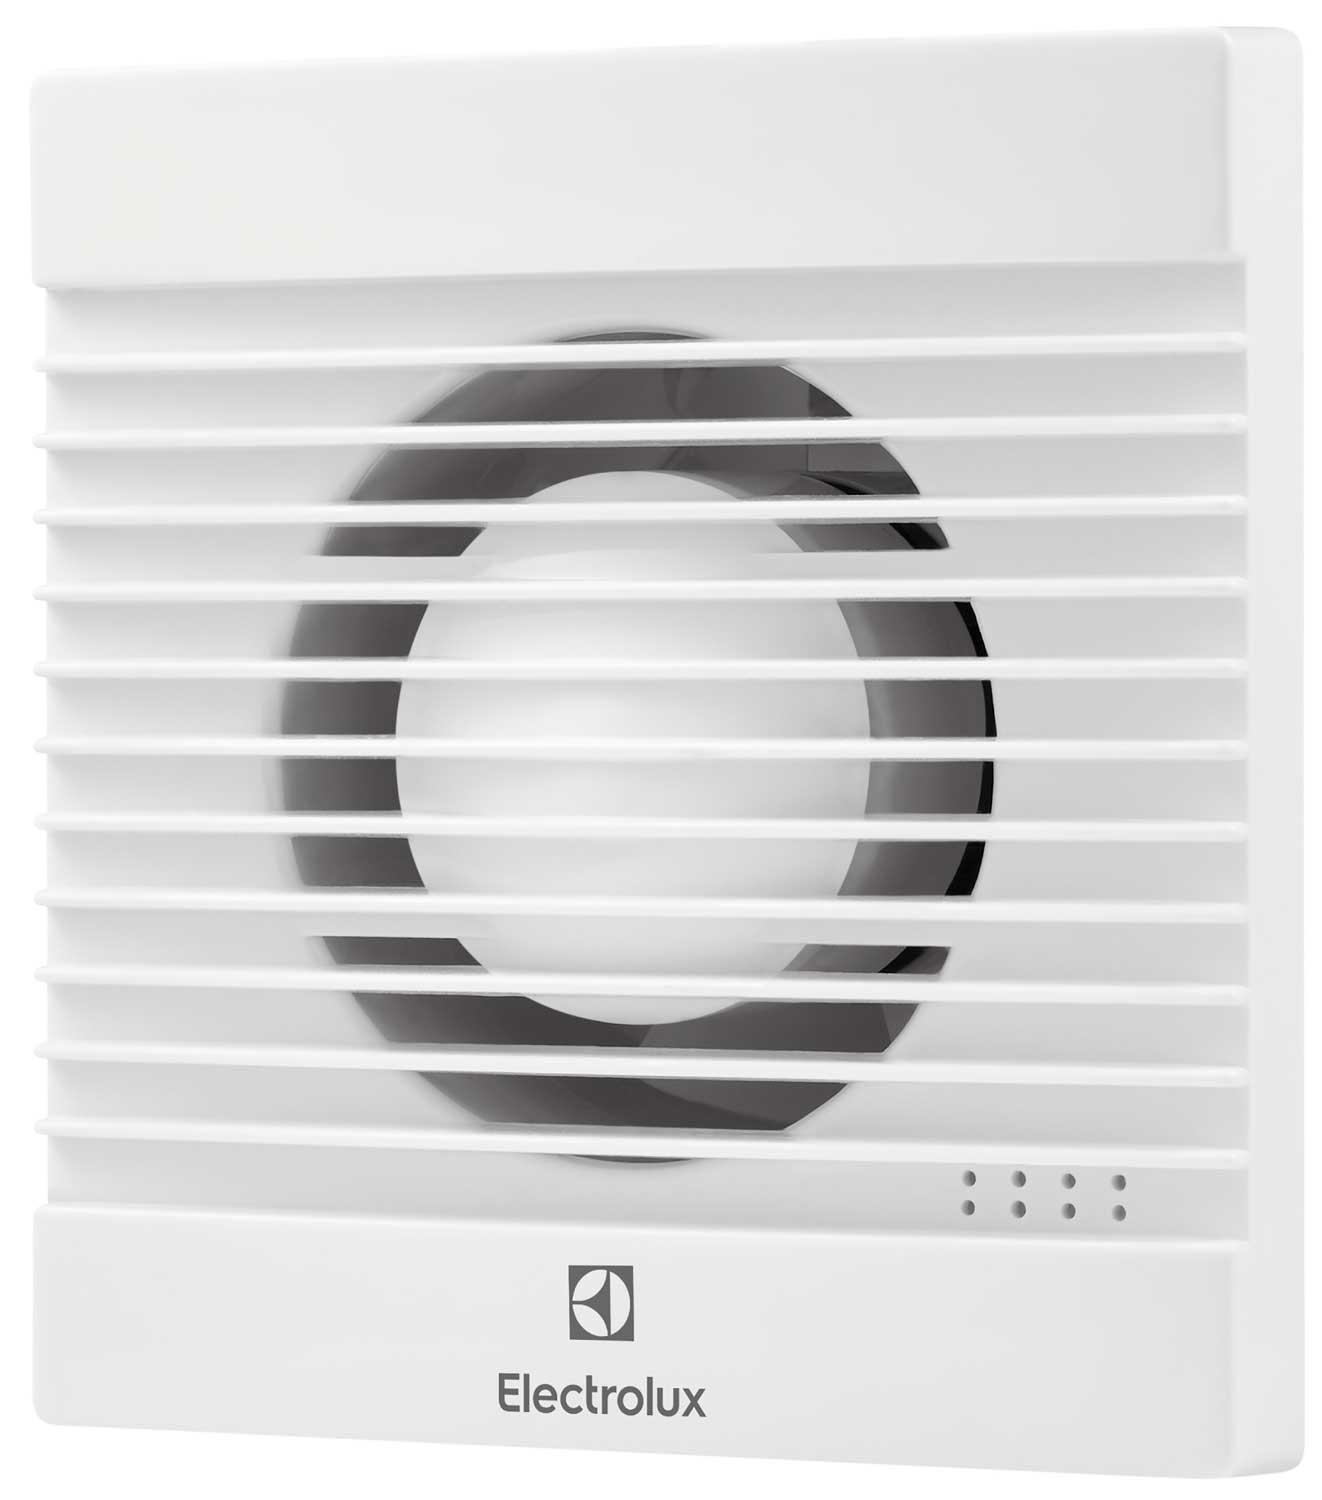 Вентилятор вытяжной Electrolux Basic EAFB-150 вытяжной вентилятор electrolux вентилятор вытяжной basic eafb 120